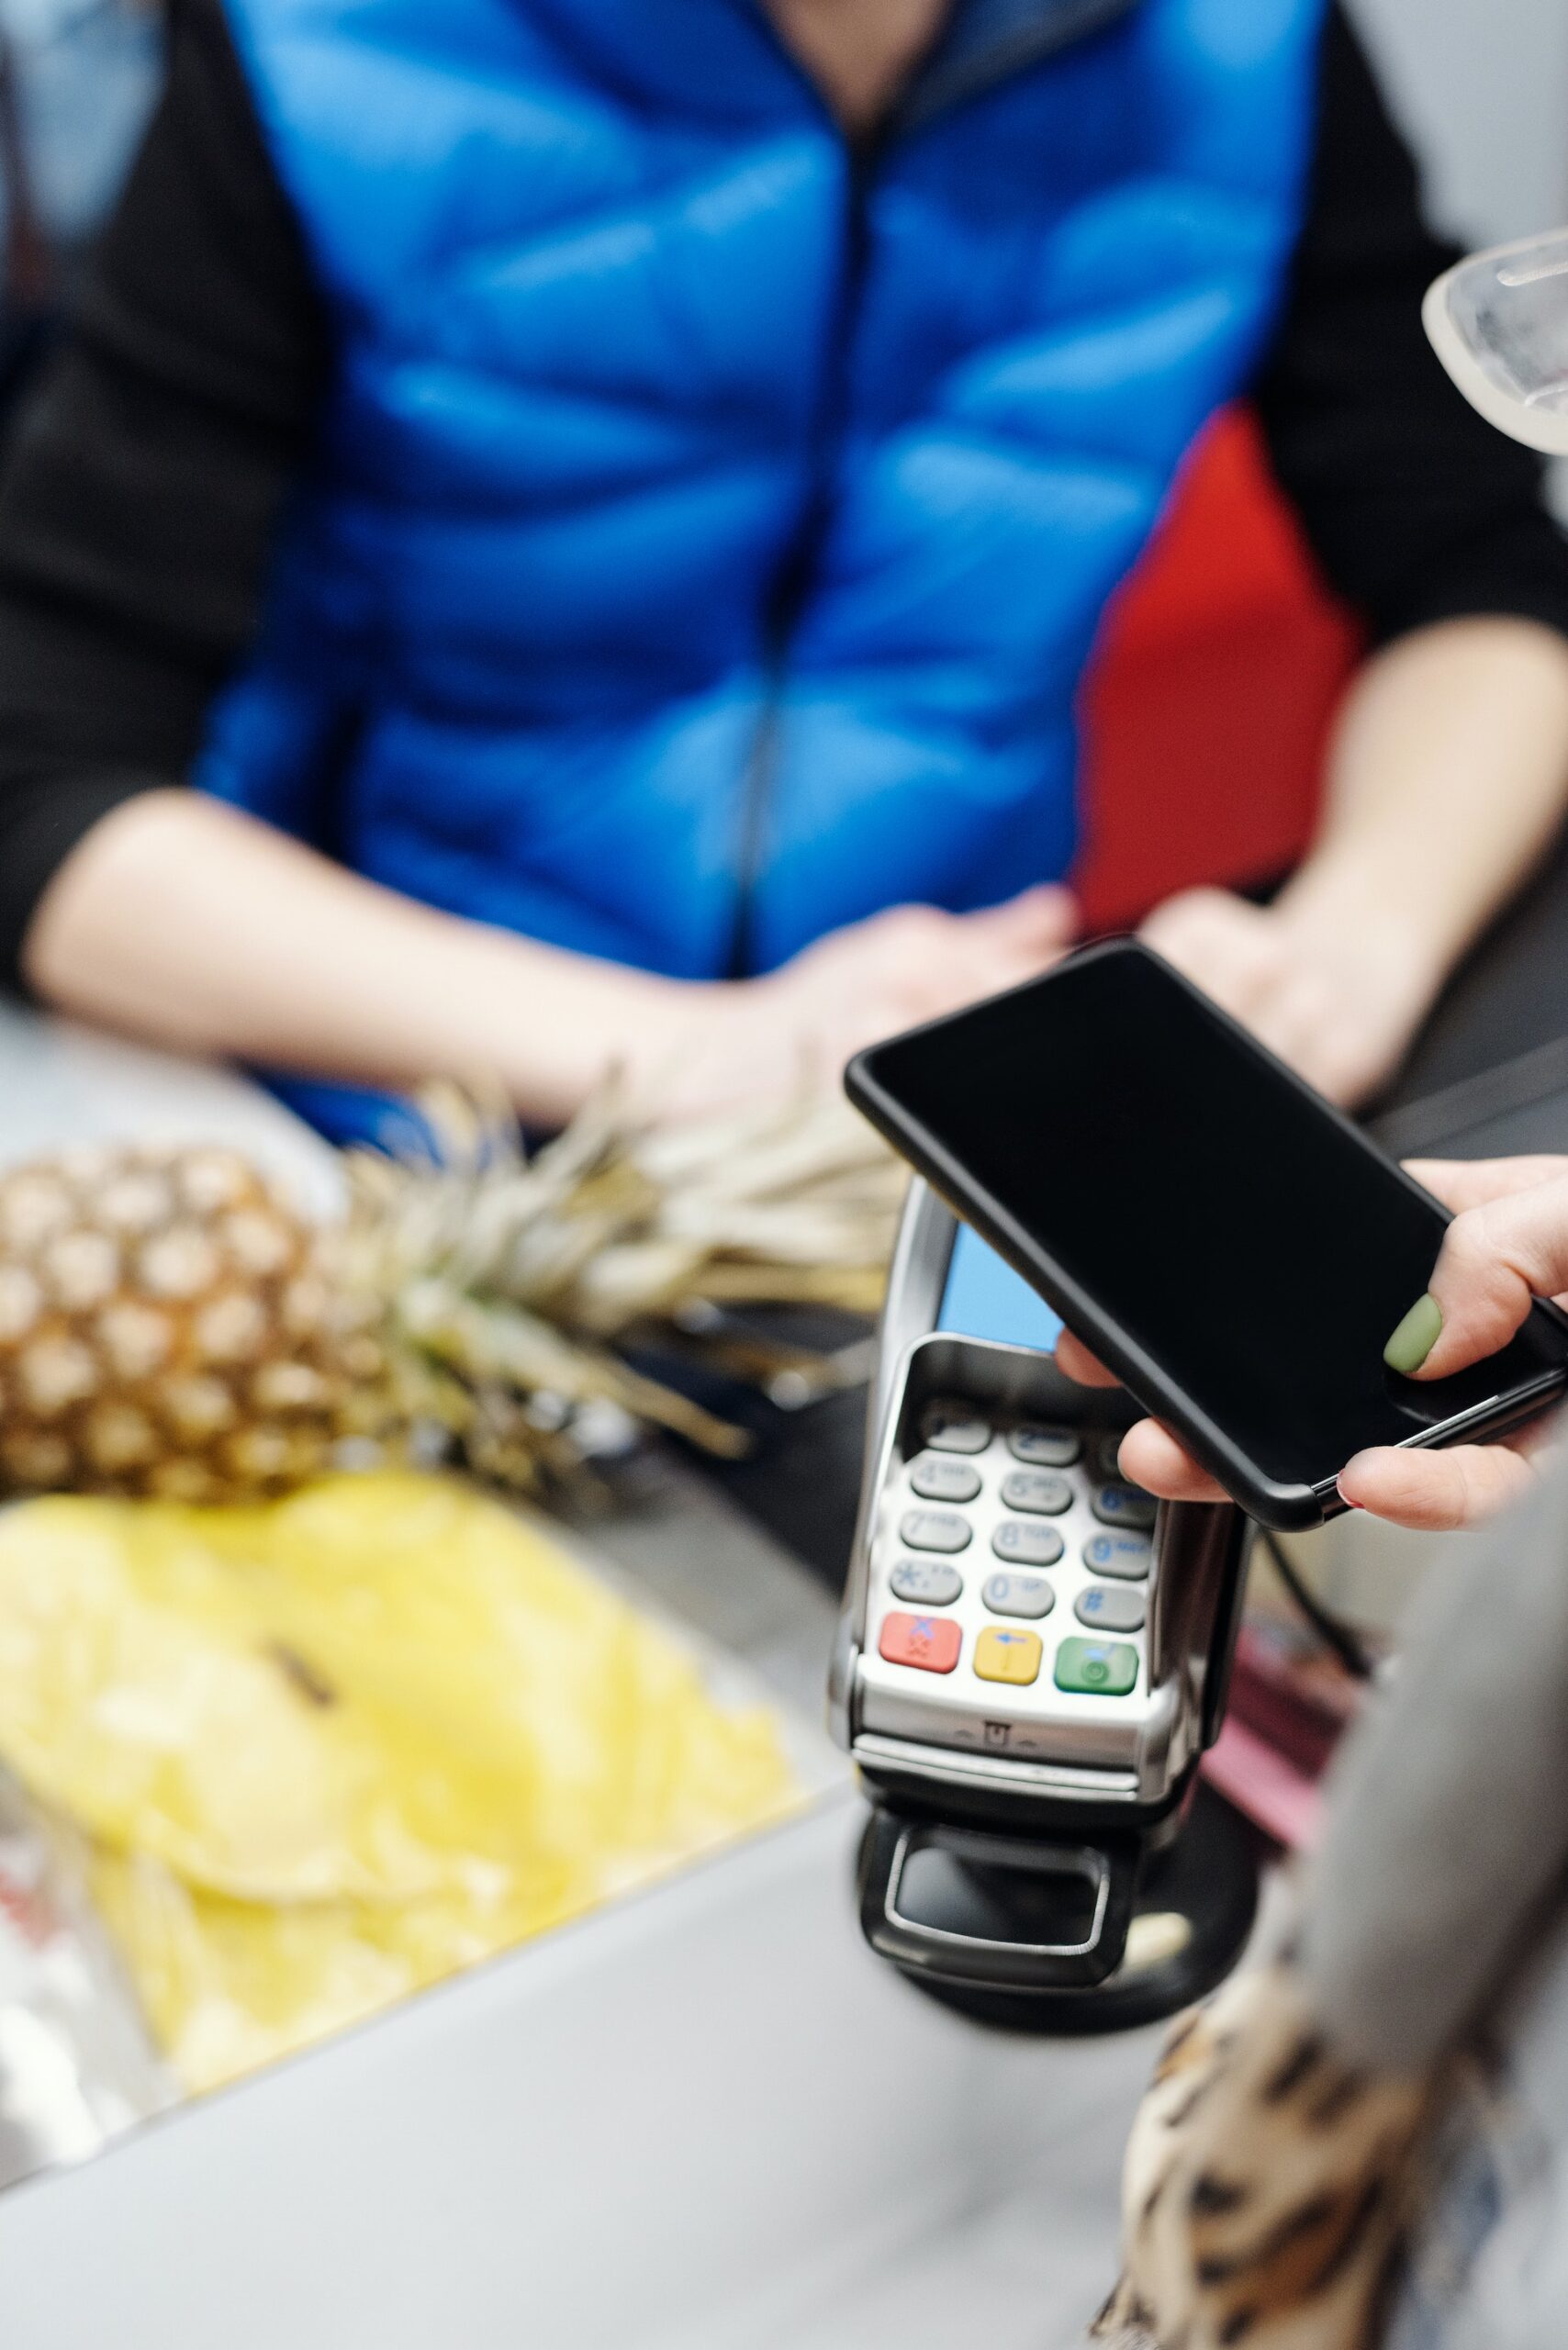 Pagos móviles: La comodidad de llevar el dinero en tu móvil